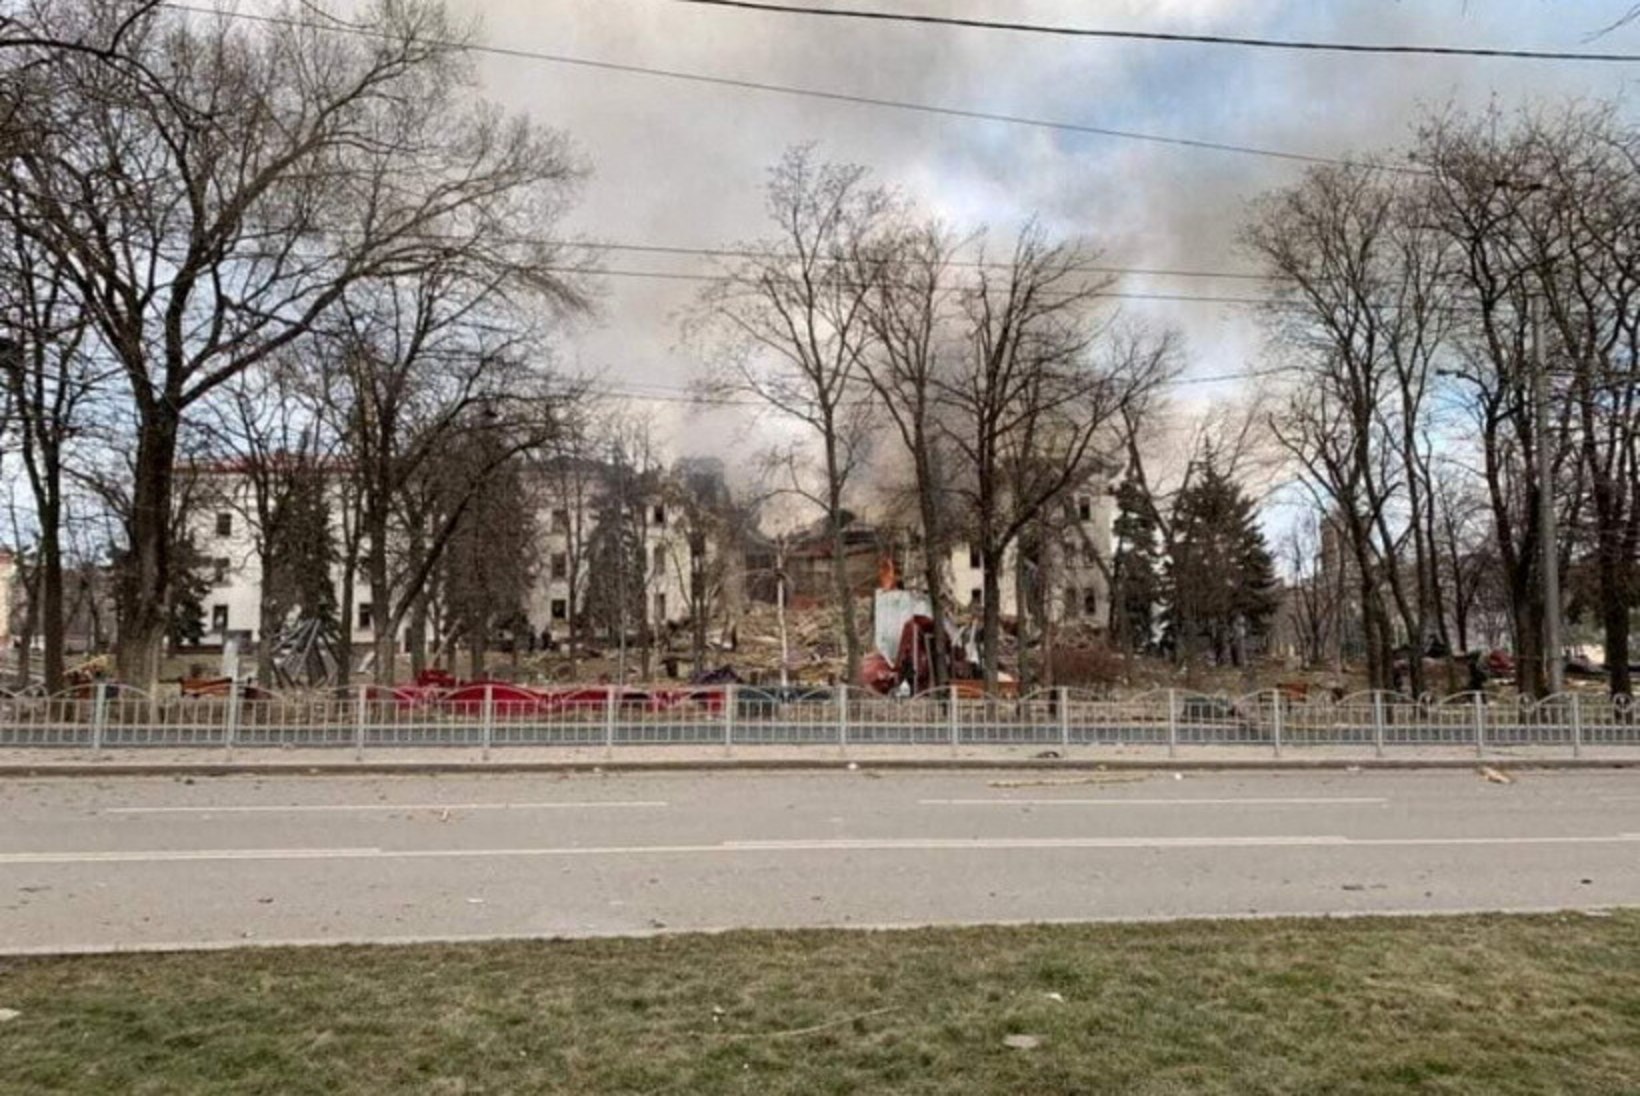 BLOGI | Vene väed pommitasid Mariupoli draamateatrit, kus varjus vähemalt 1000 inimest, peamiselt naised ja lapsed. Joe Biden nimetas Putinit sõjakurjategijaks